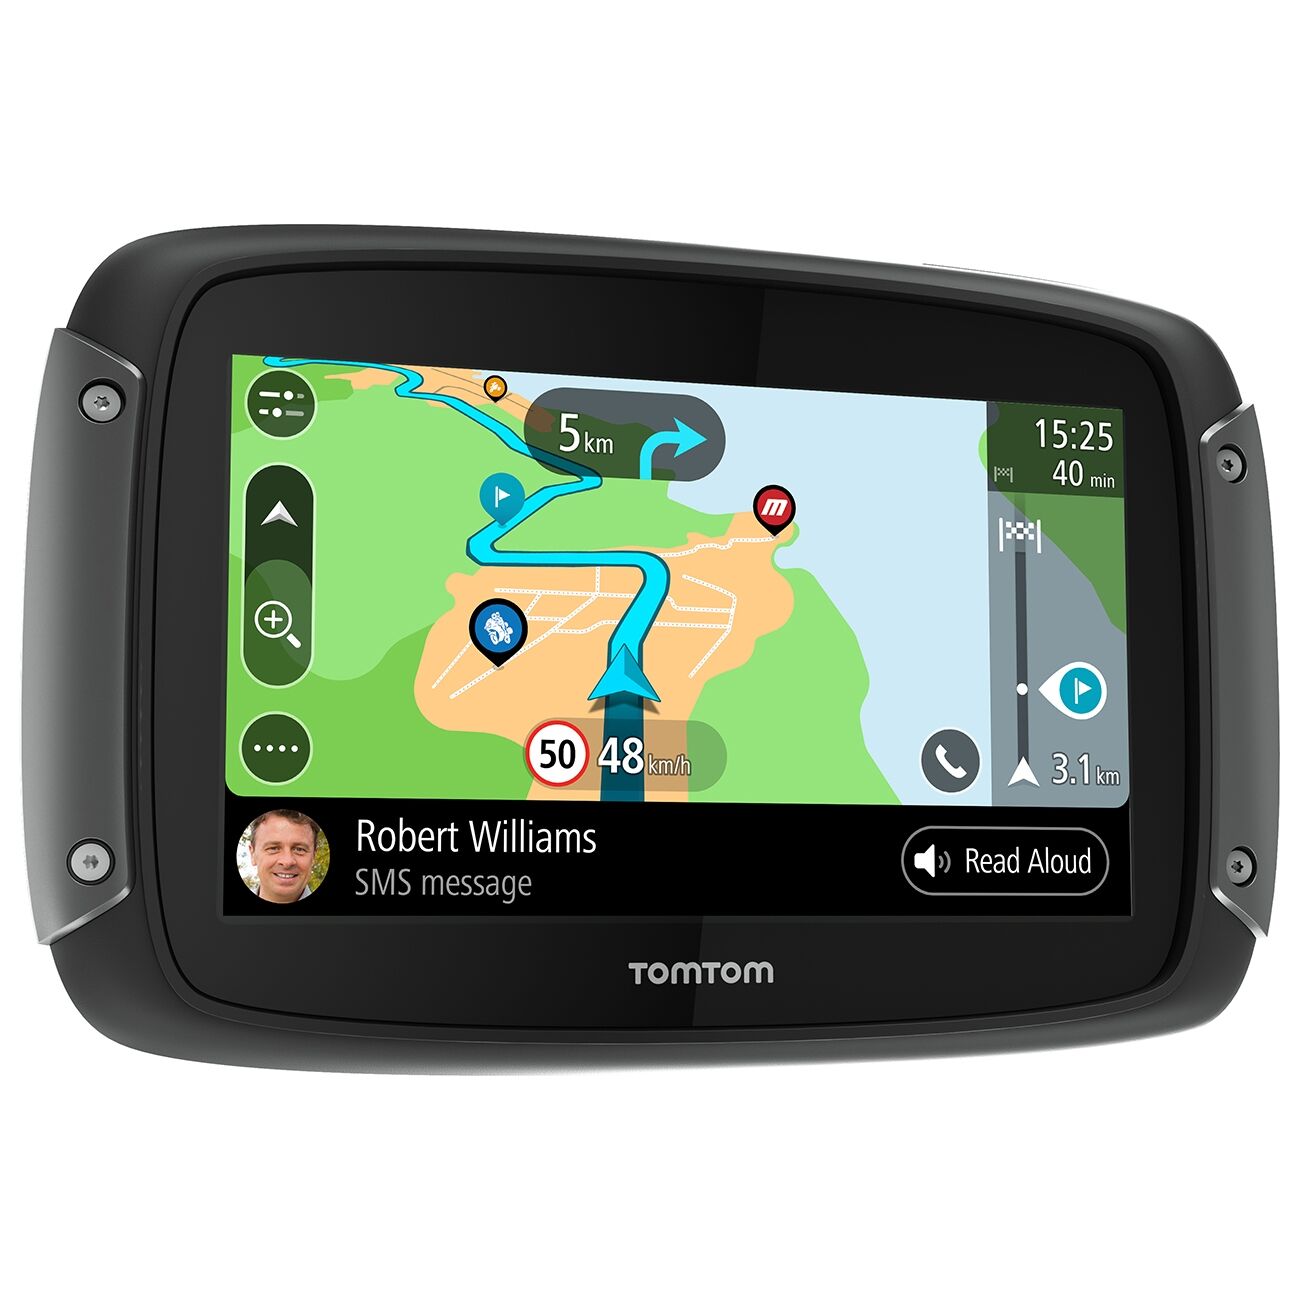 TomTom Navigationsgerät RIDER 550 World Motorrad-Navi 4,3 Zoll weltweite Karten